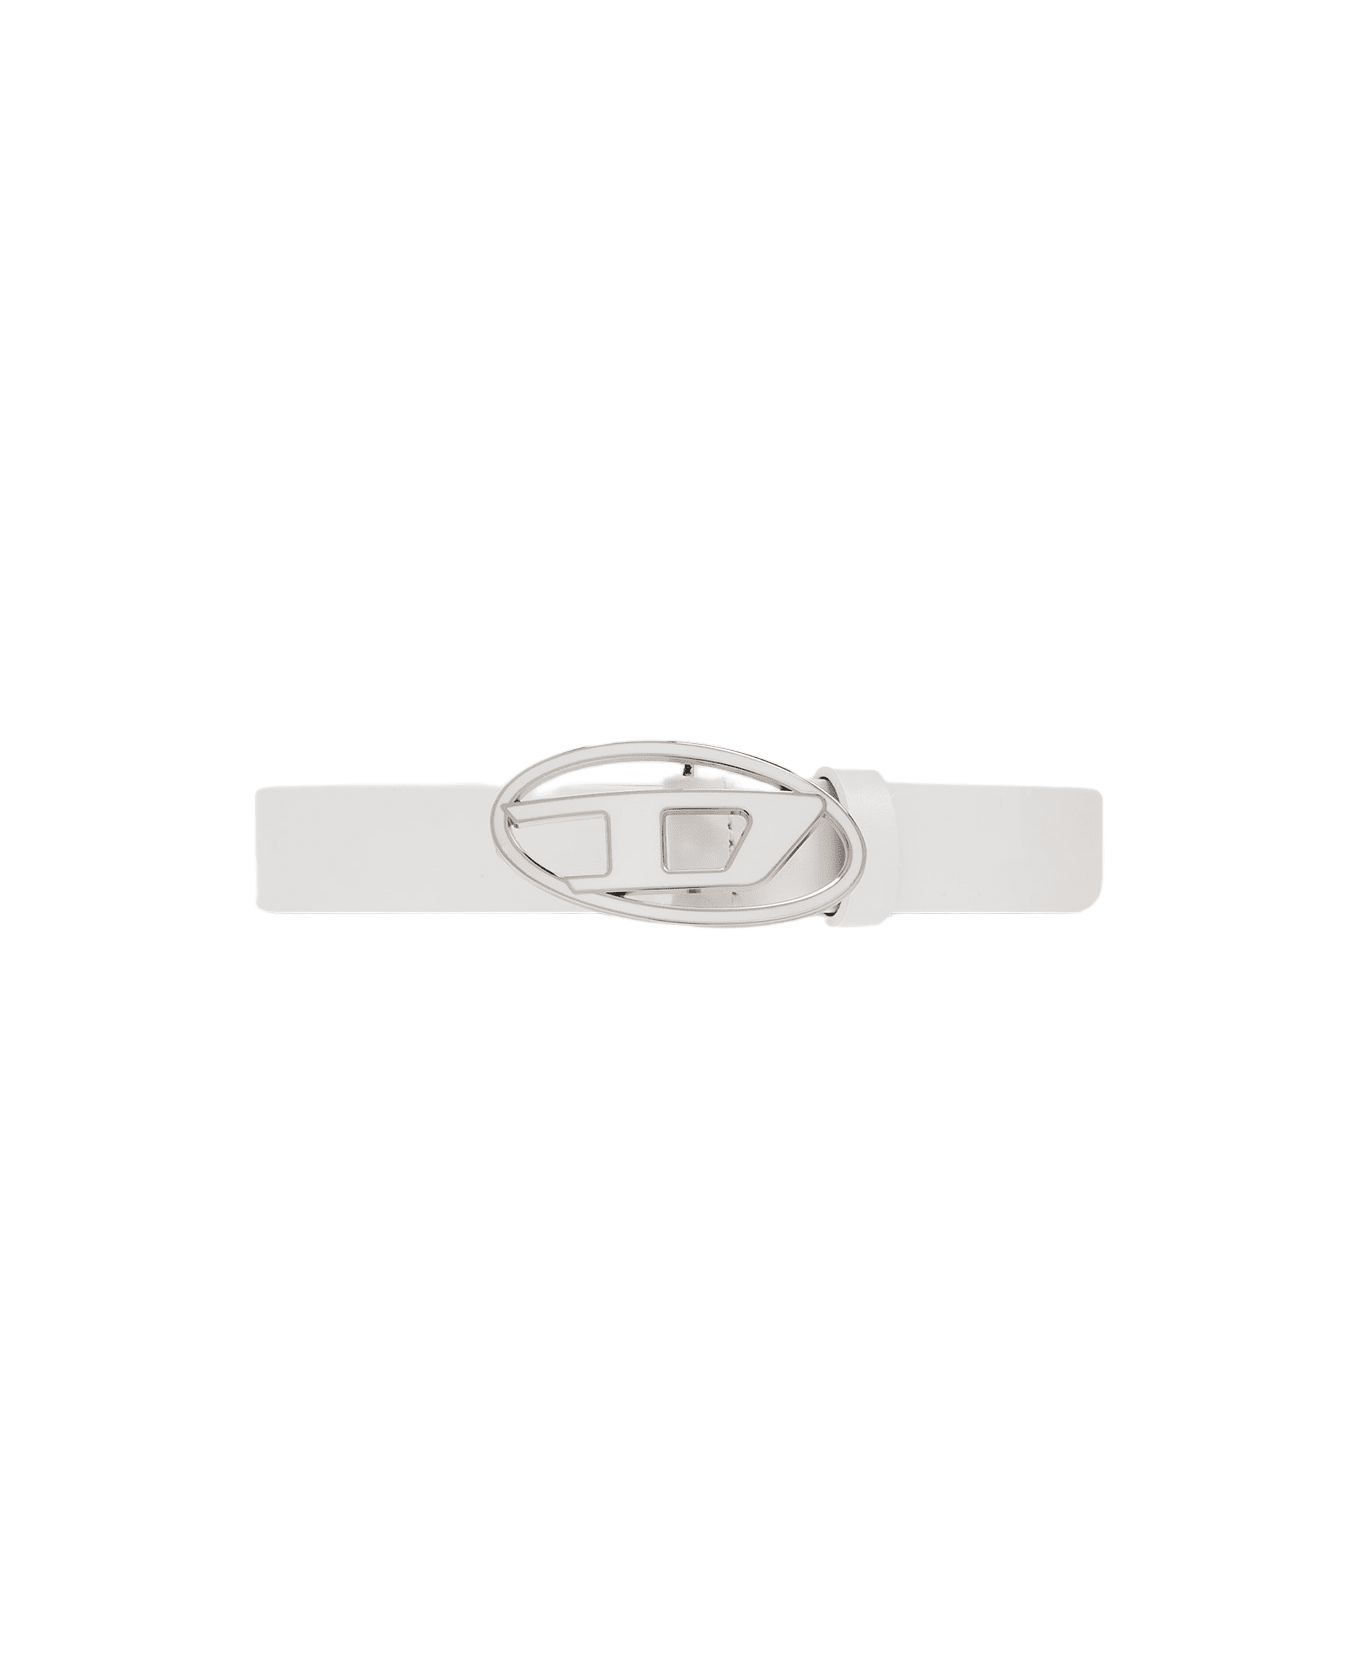 Diesel Oval D Logo B-1dr 25 Belt White Leather Belt With Oval-d Buckle - B-1dr 25 Belt - Bianco ベルト